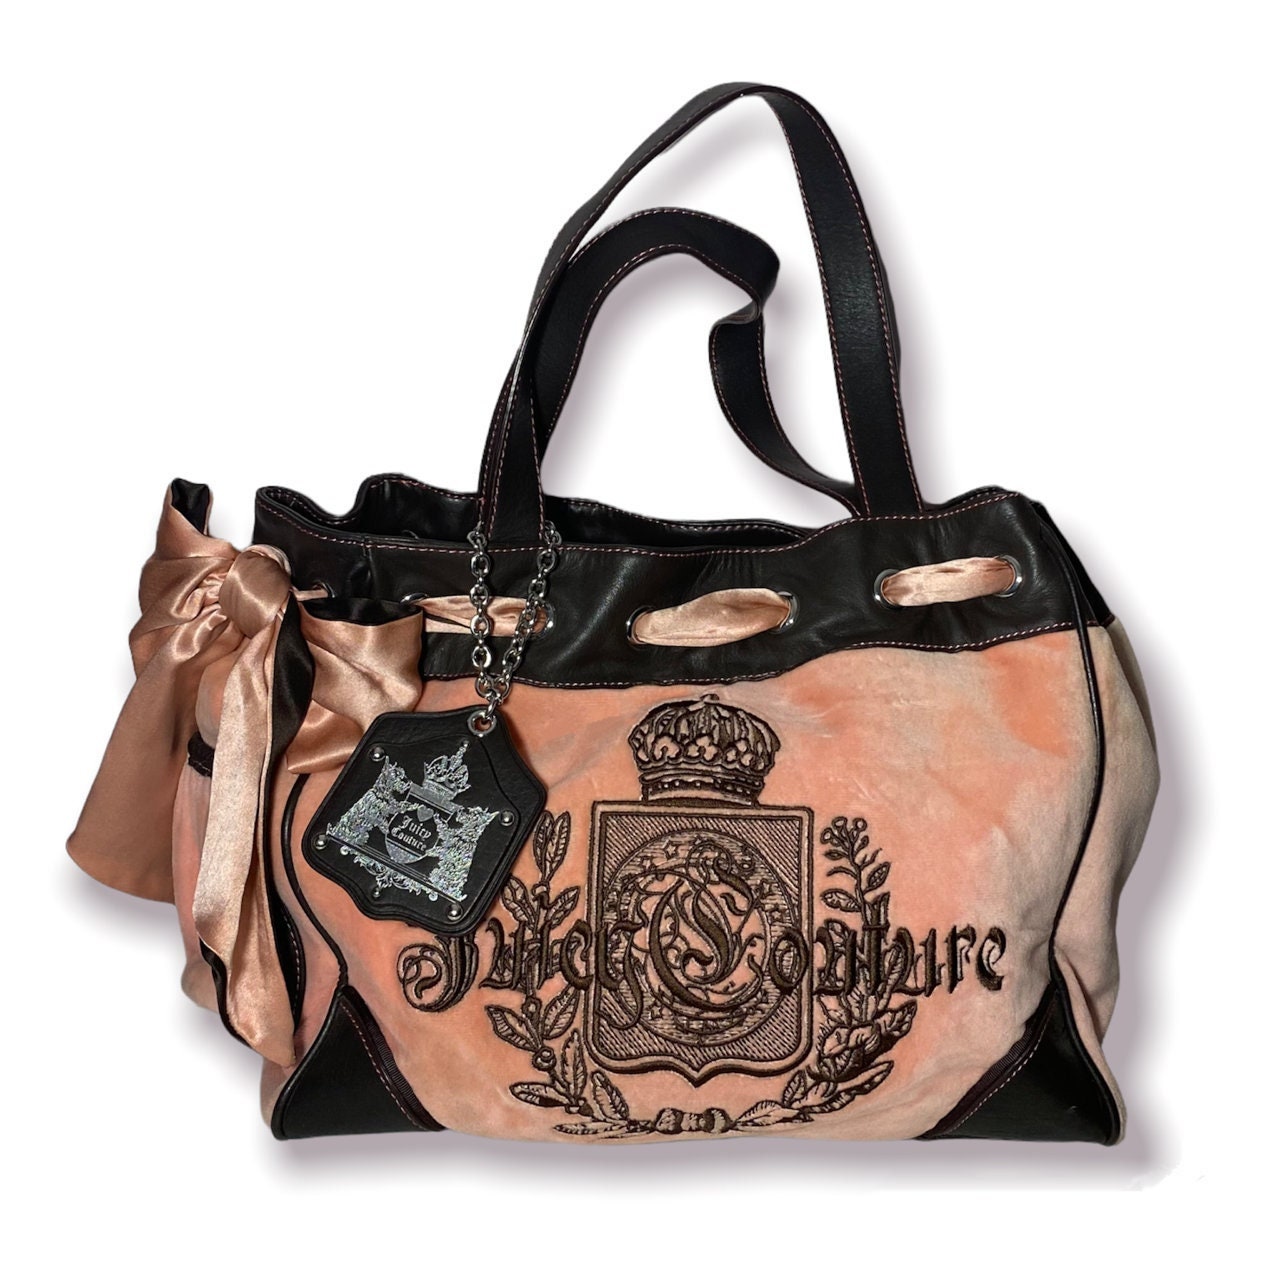 Juicy Couture Barrel Bag Purse - Etsy Denmark